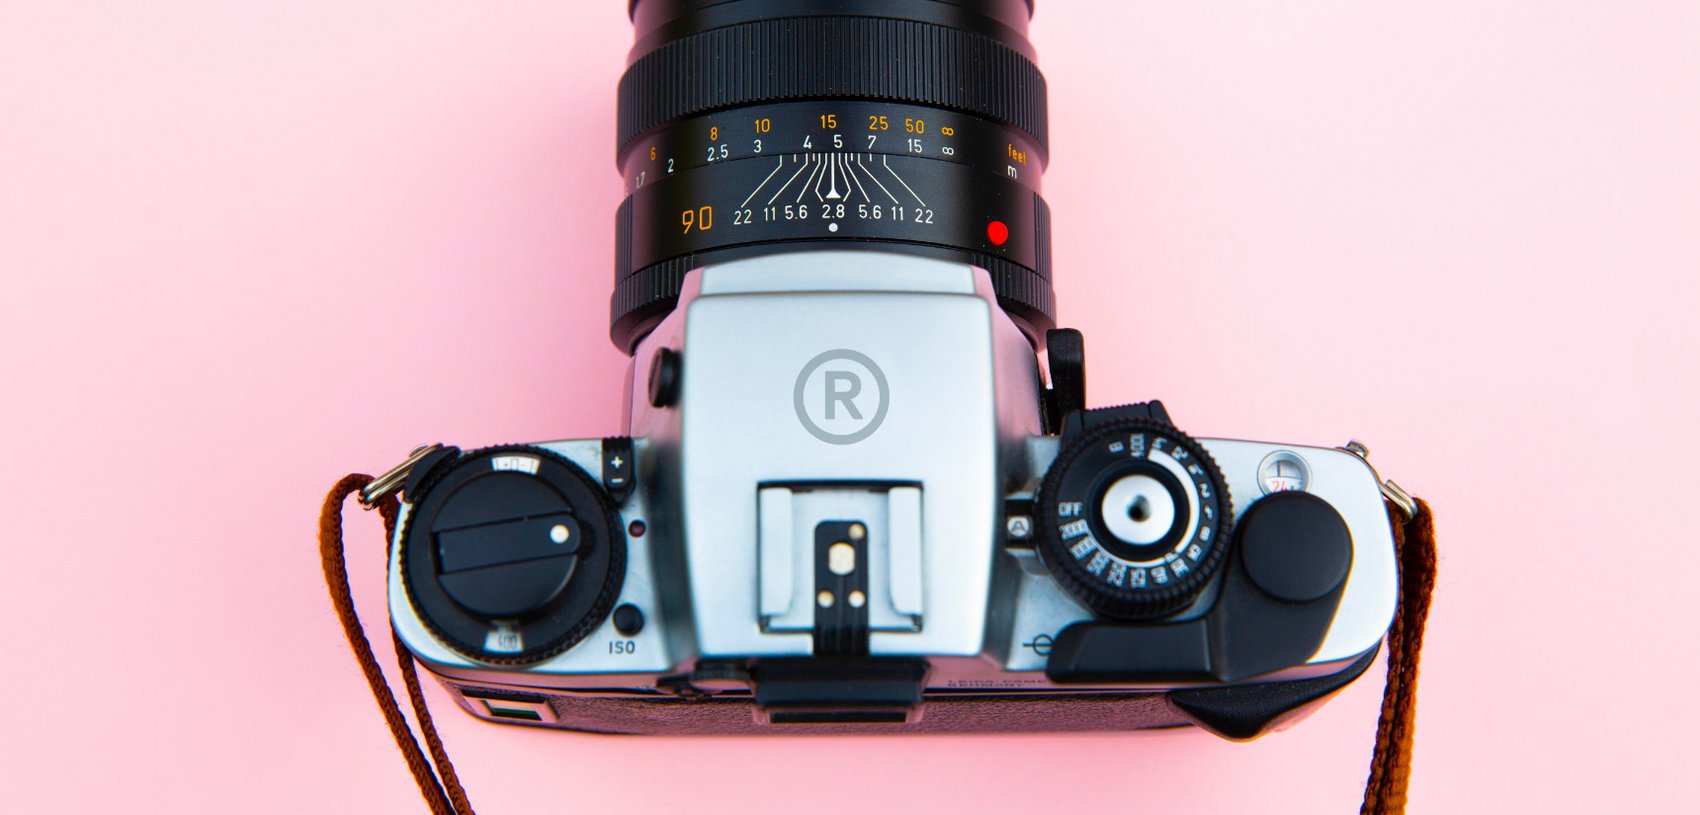 Analoge Kamera mit aufgedrucktem RIEGG-Logo vor rosa Hintergrund